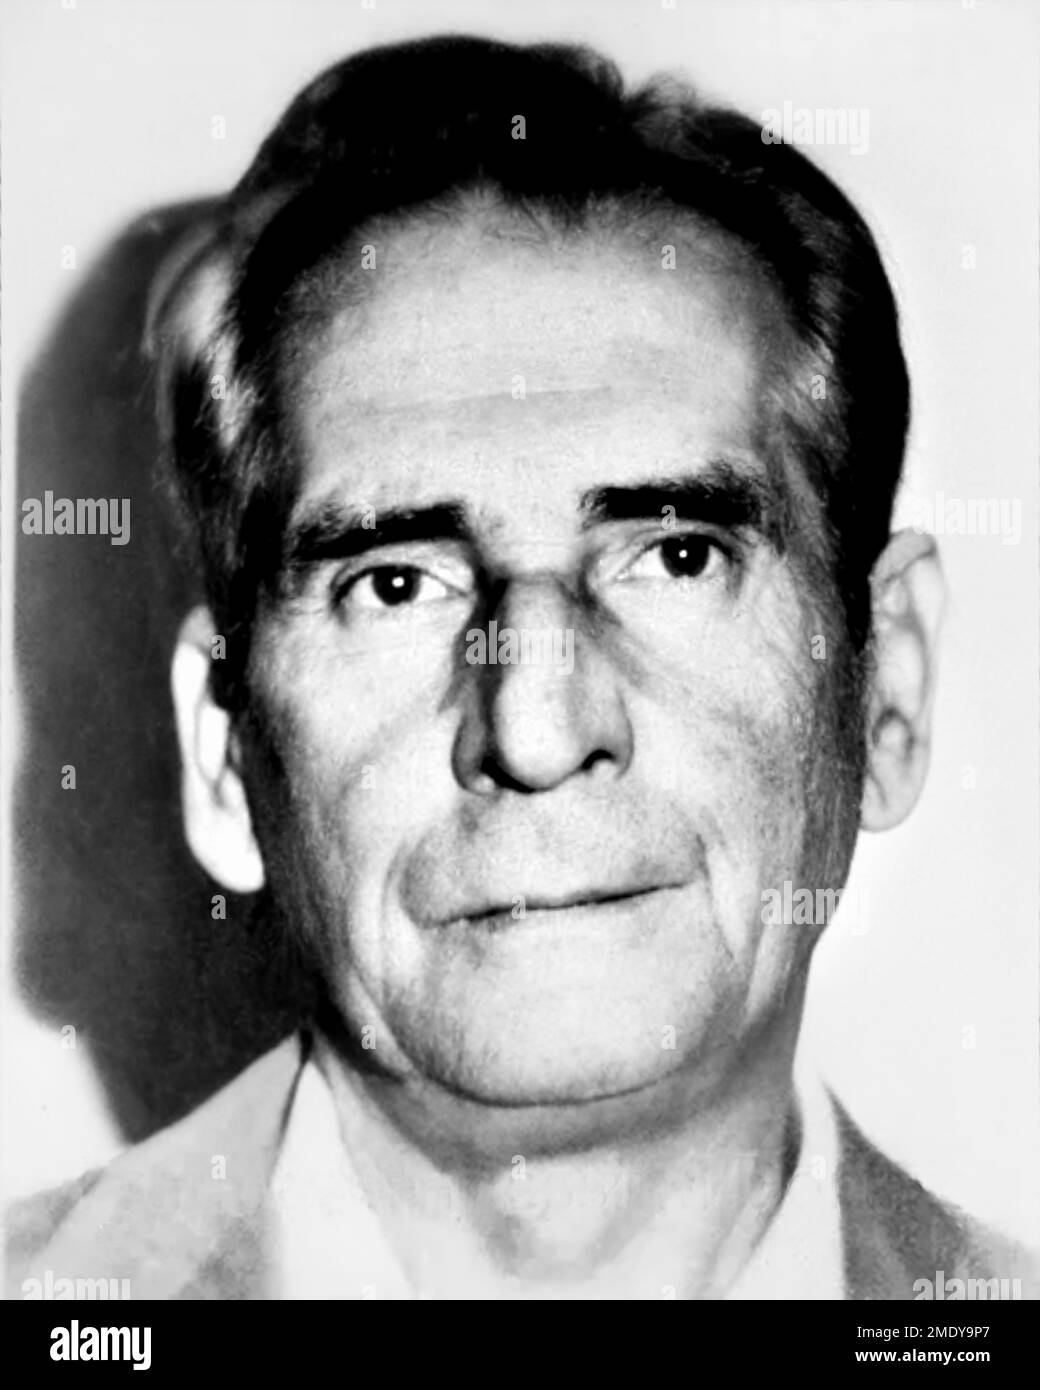 1990 ca, Castelvetrano , Trapani , ITALIA :il Boss mafioso FRANCESCO MESSINA DENARO ( 1928 - 1998 ), aka DON CICCIO , cosa NOSTRA mafioso , padre del criminale omicida MATTEO MESSINA DENARO ( nato il 26 aprile 1962 anche noto come Diabolik o U Siccu ) . Fotoboth diffuso dalla polizia italiana . Fotografo sconosciuto . - STORIA - FOTO STORICHE - FOTO TESSERA SEGA - FOTOTESSERA - RITRATTO - RITRATTO - OBIETTIVO - OCCHIALI DA Foto Stock